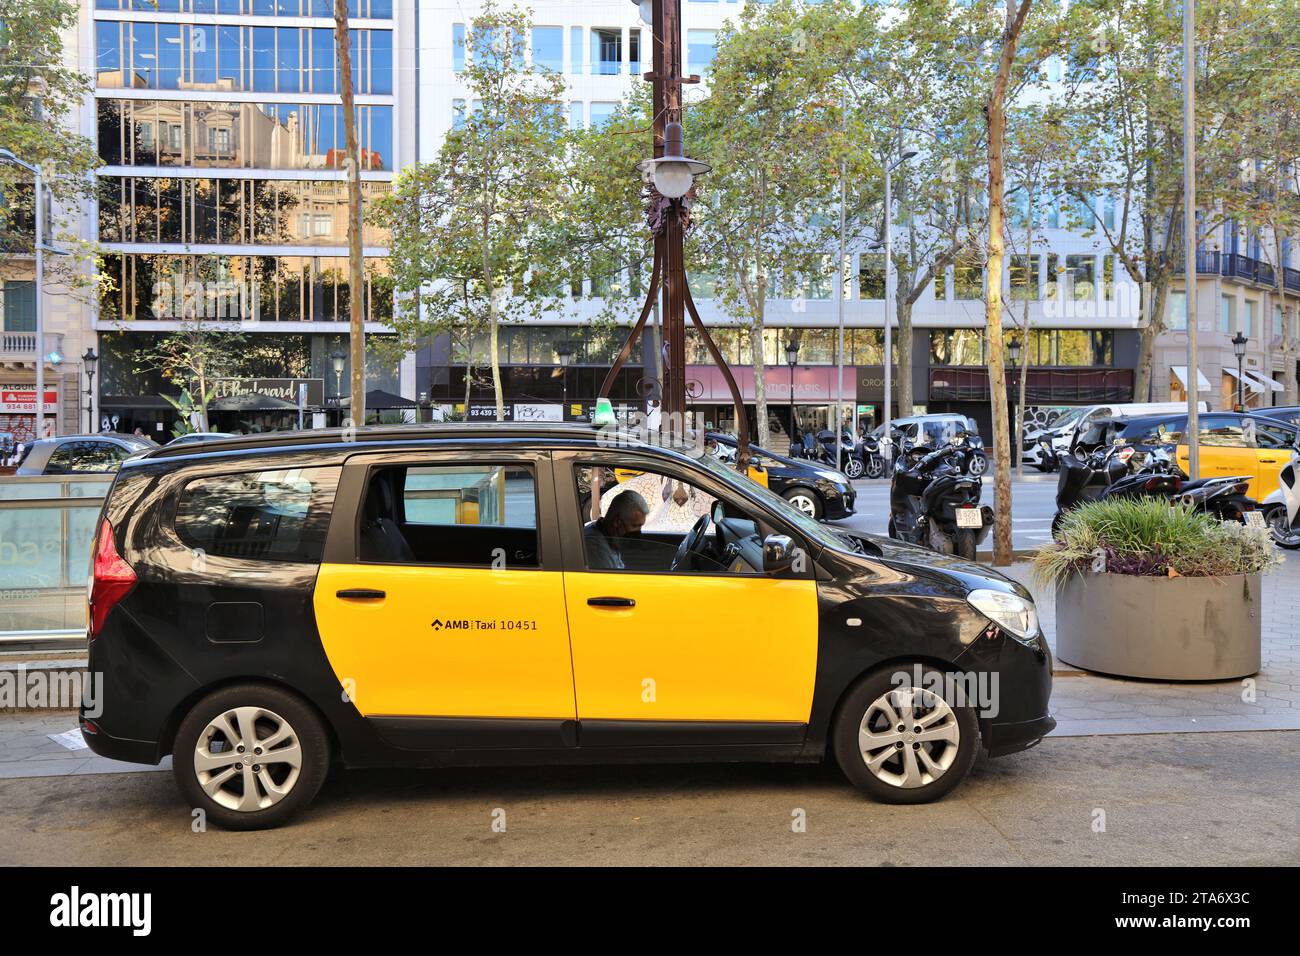 BARCELONA, SPANIEN - 7. OKTOBER 2021: Offizielles lizenziertes Dacia Lodgy Taxi in Barcelona, Spanien. Barcelona ist die zweitgrößte Stadt Spaniens. Stockfoto